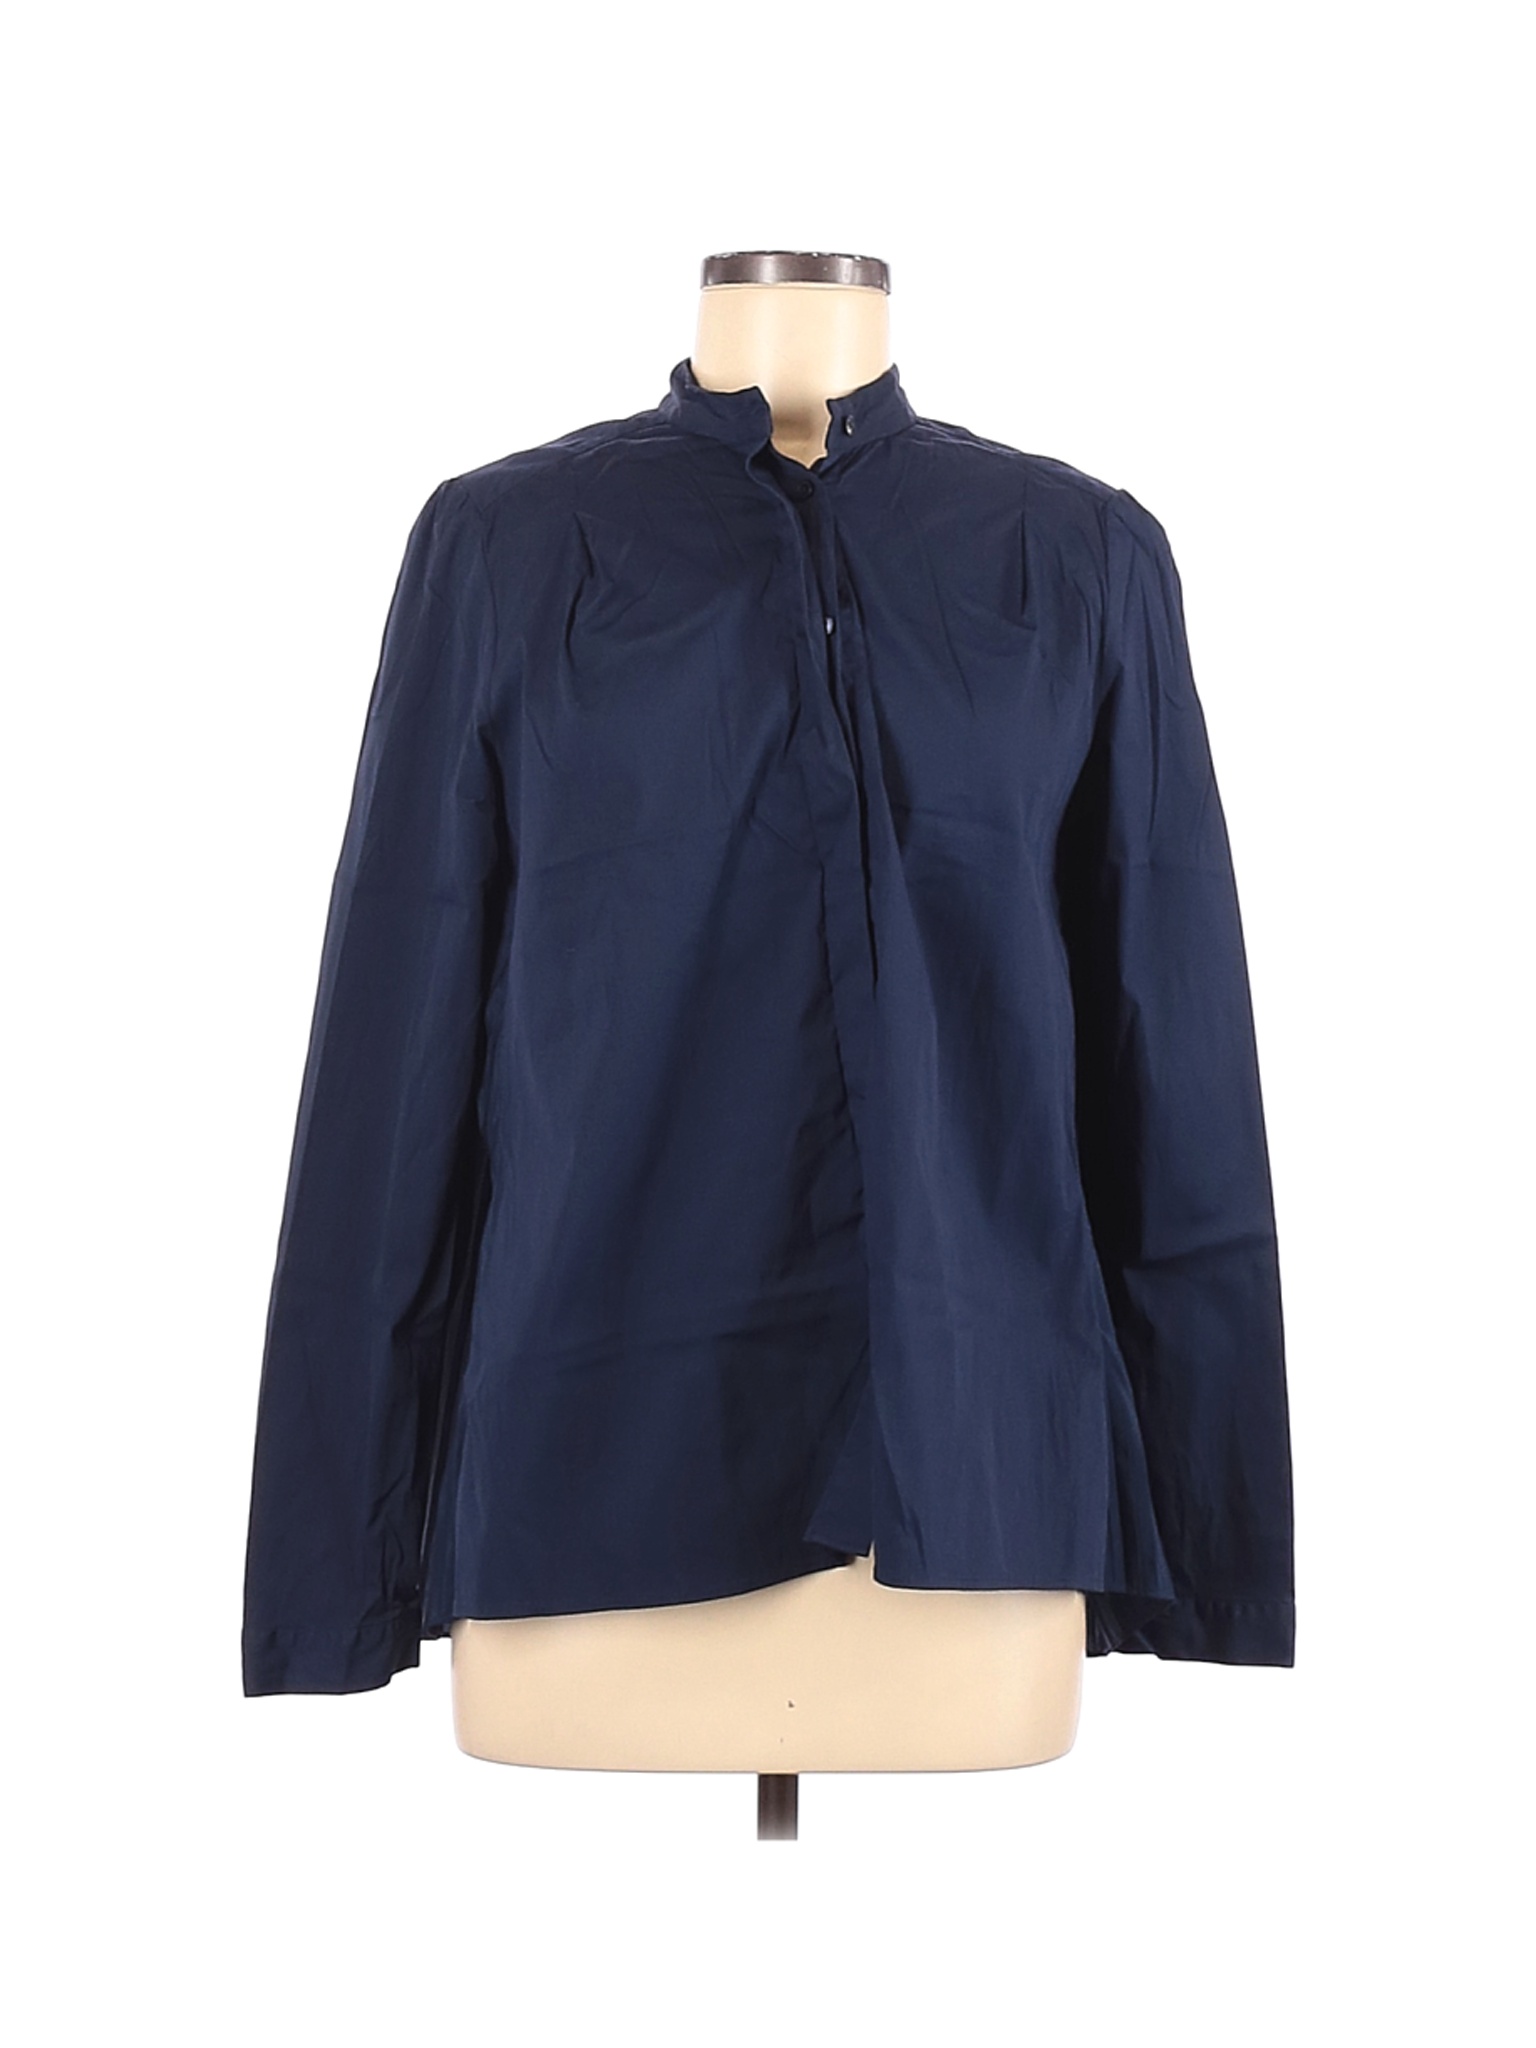 Van Laack Women Blue Long Sleeve Button-Down Shirt 40 eur | eBay